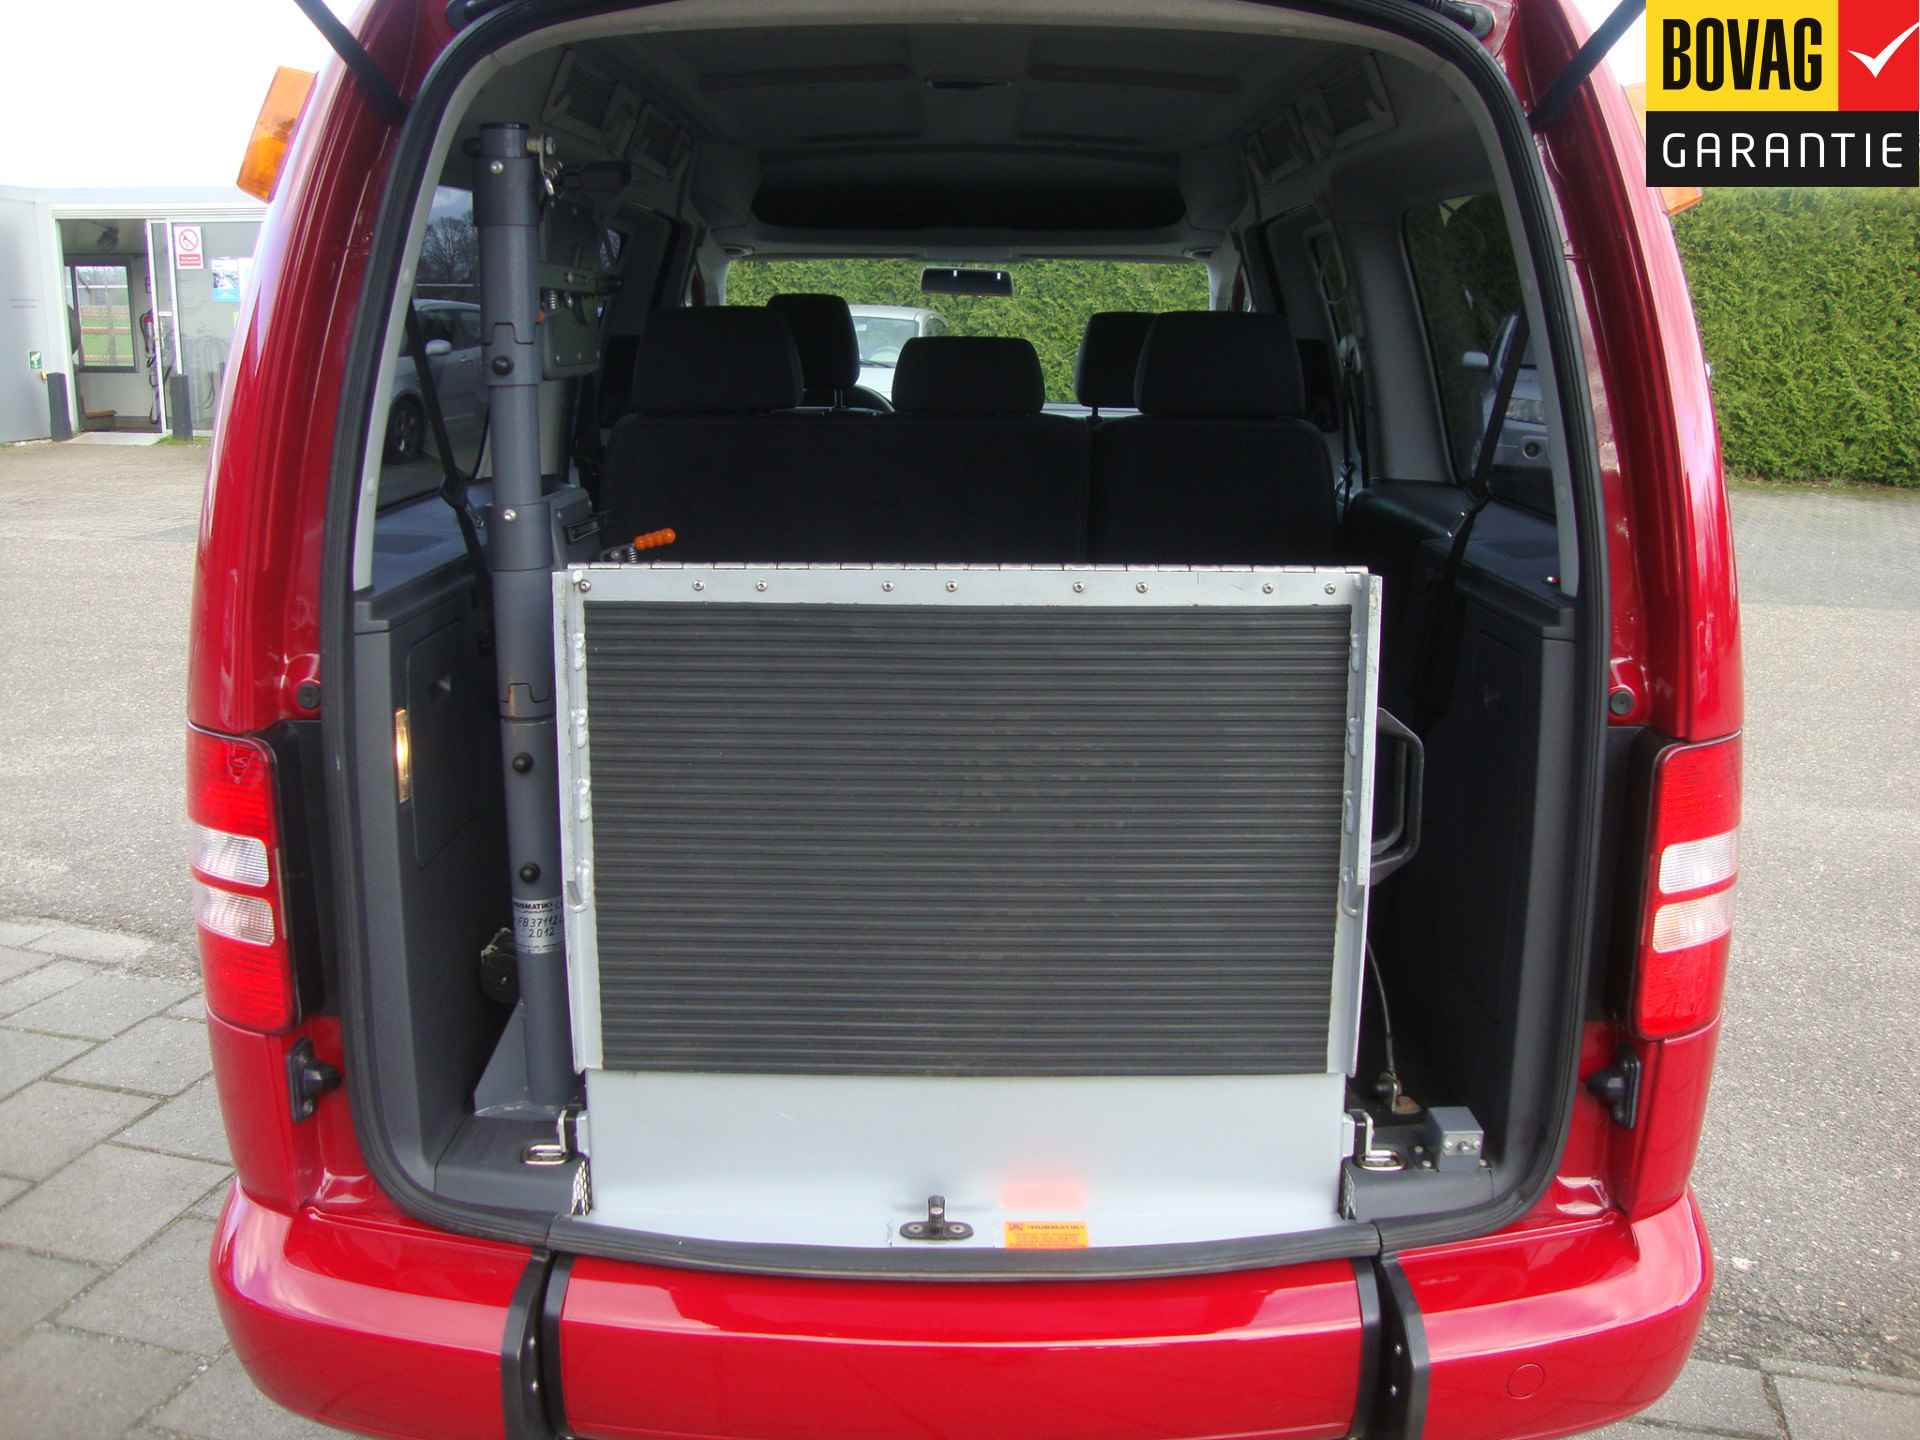 Volkswagen Caddy Maxi 1.2 TSI Trendline Rolstoel / Invalide , 5 pers + 1 rolstoelplaats( Airco,Cruise Control) RIJKLAARPRIJS! - 3/47